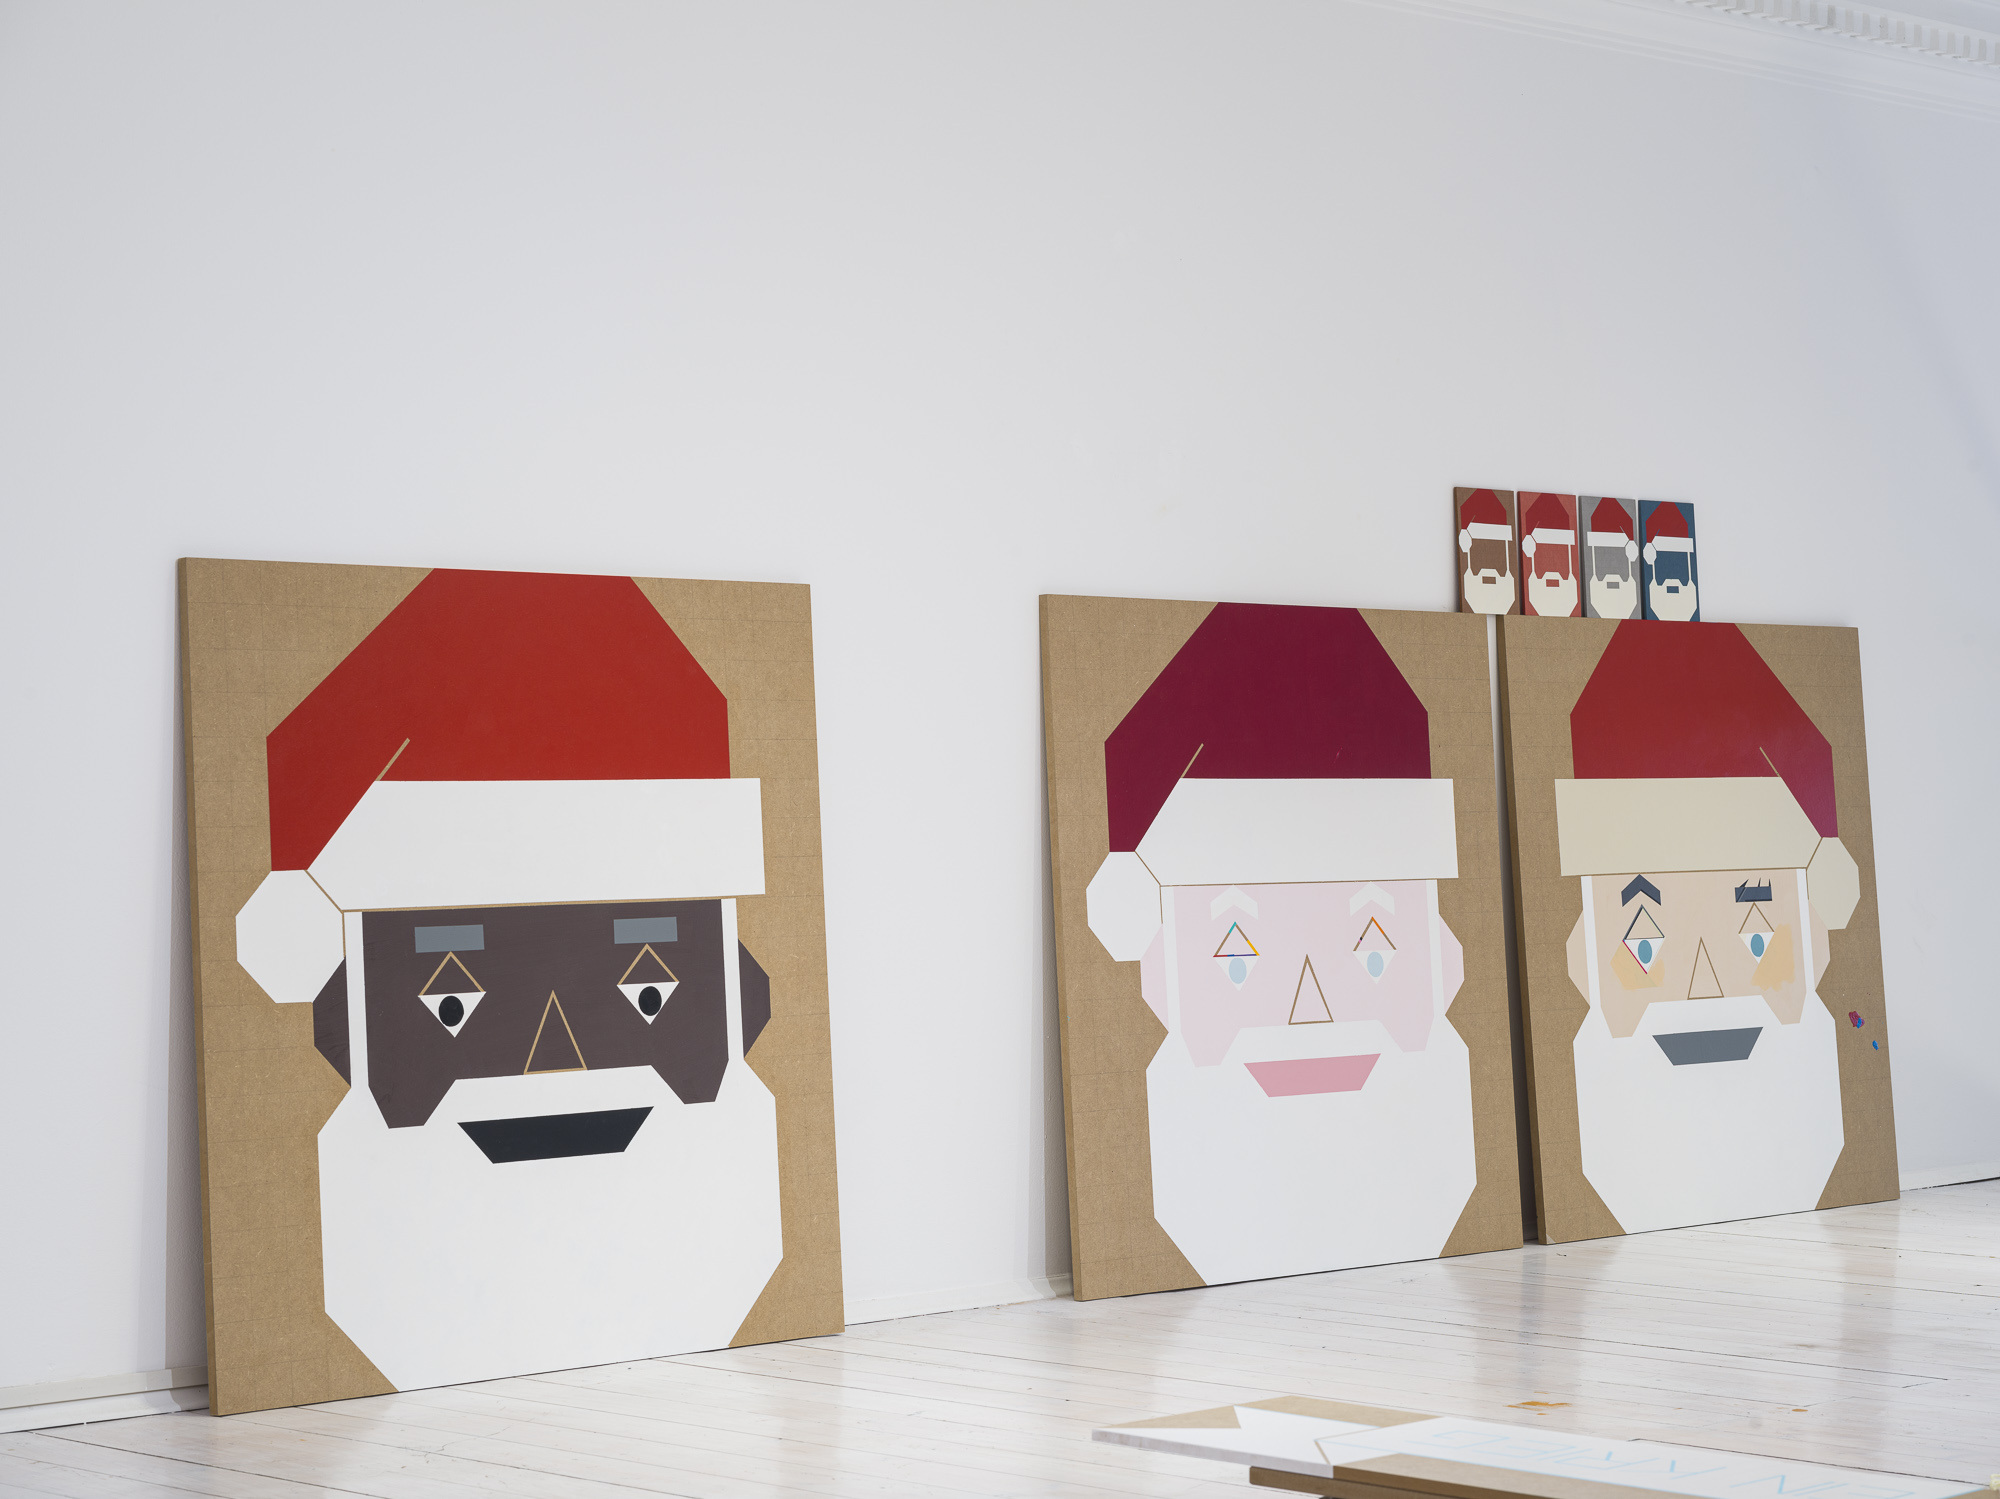 Siggi Hofer, 'Santa 2', 'Santa 1', 'Santa 3', 2023. Acrilic and Lacquer on MDF panel. each 100x100 cm. Installation view at Spazio CUT. Photo:Tiberio Sorvillo